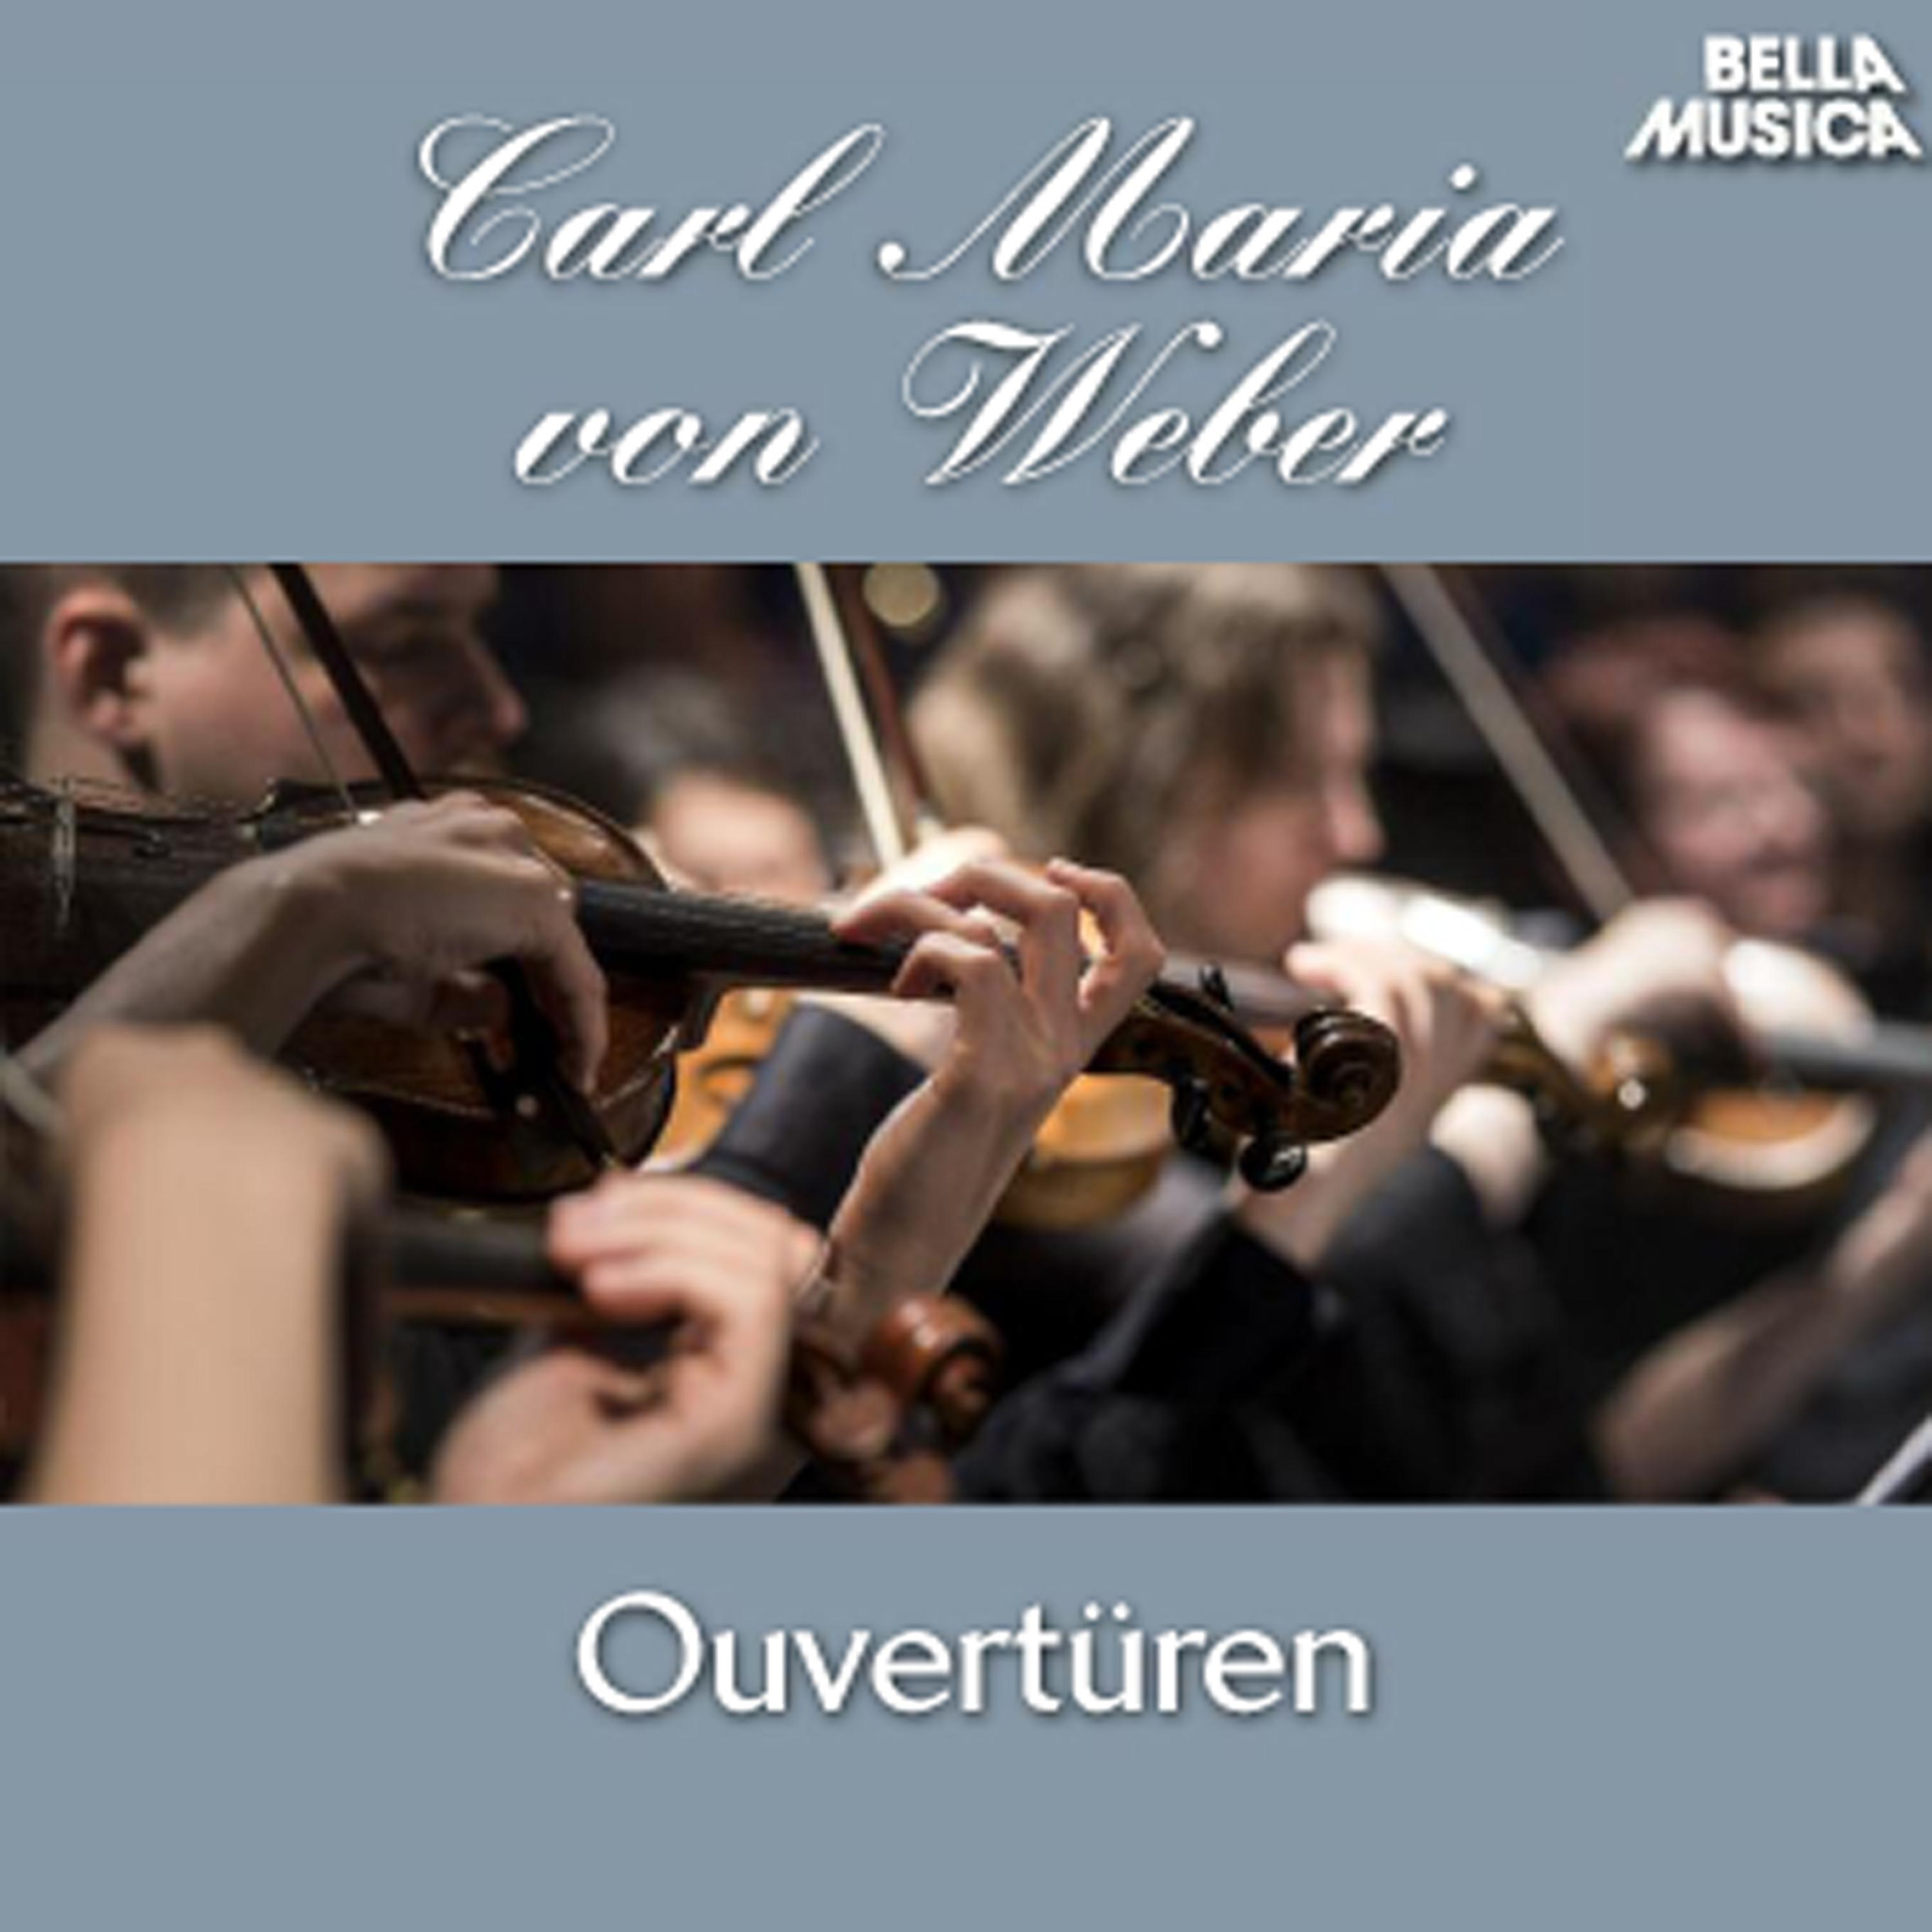 Preziosa: Ouvertü re fü r Orchester, Op. 78